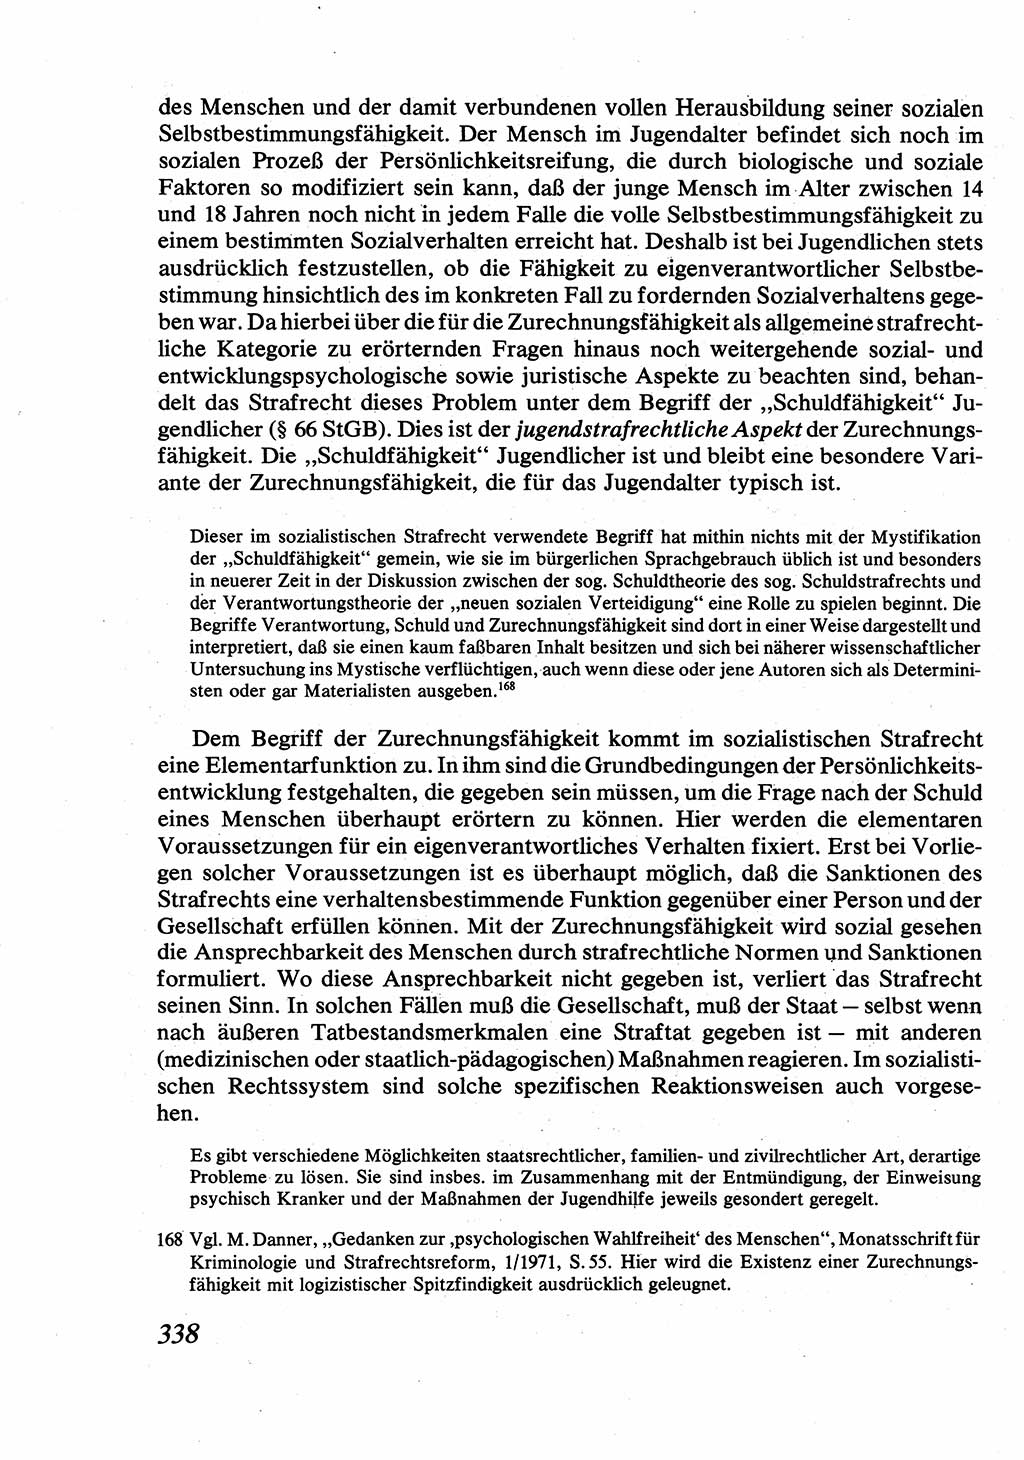 Strafrecht [Deutsche Demokratische Republik (DDR)], Allgemeiner Teil, Lehrbuch 1976, Seite 338 (Strafr. DDR AT Lb. 1976, S. 338)